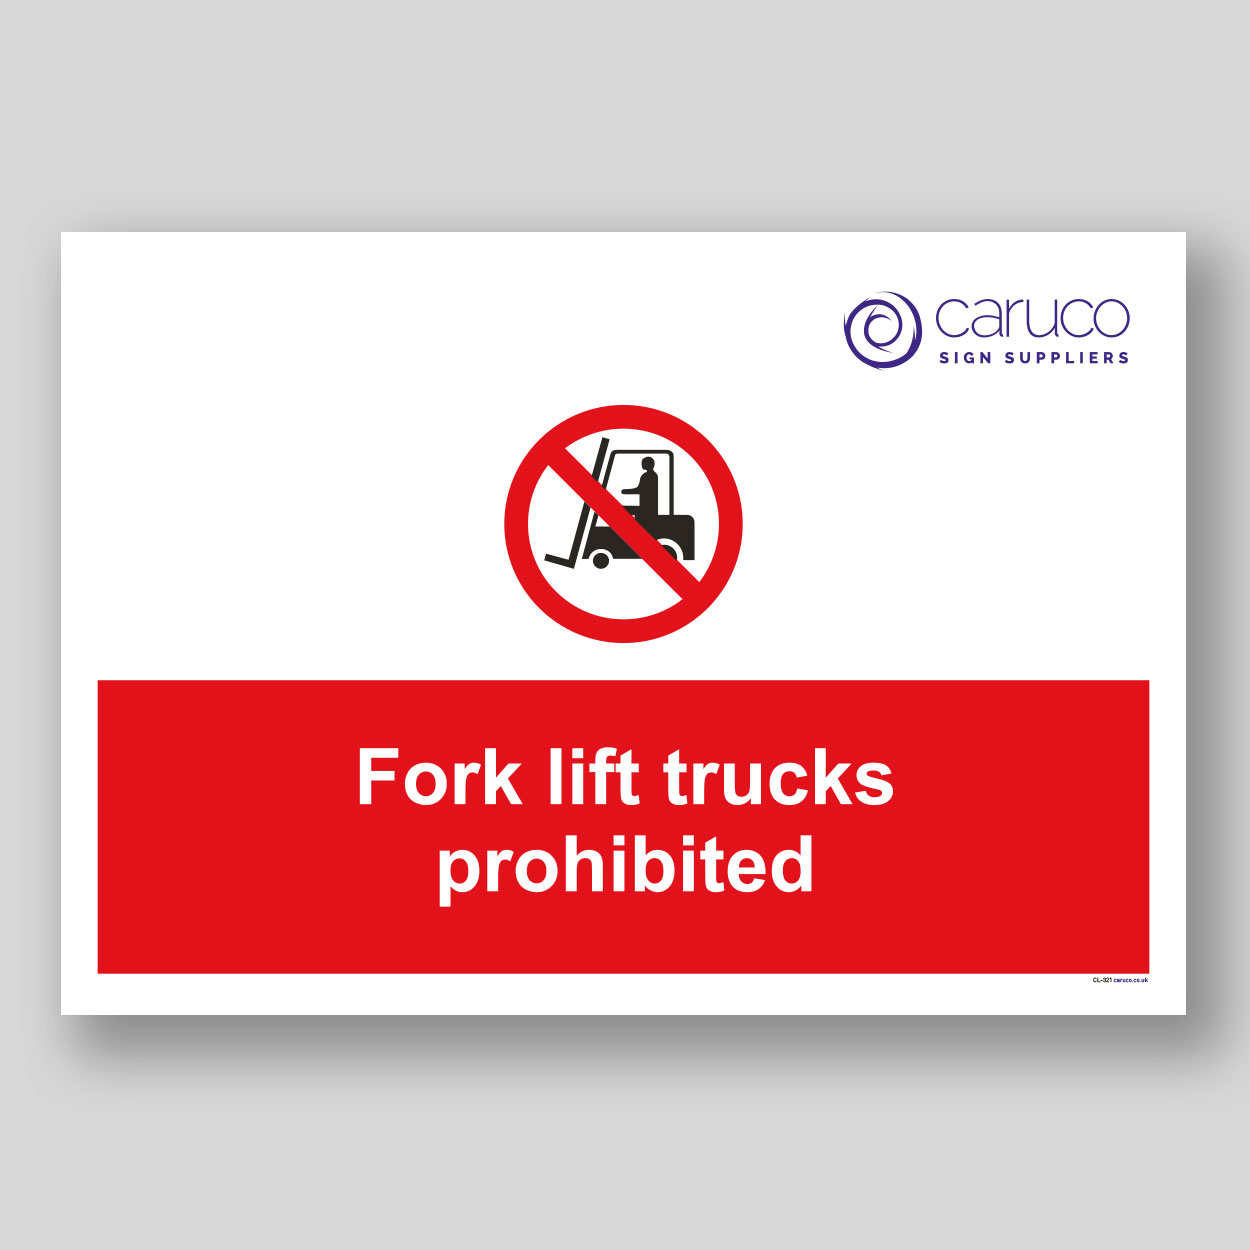 CL-321 Fork lift trucks prohibited